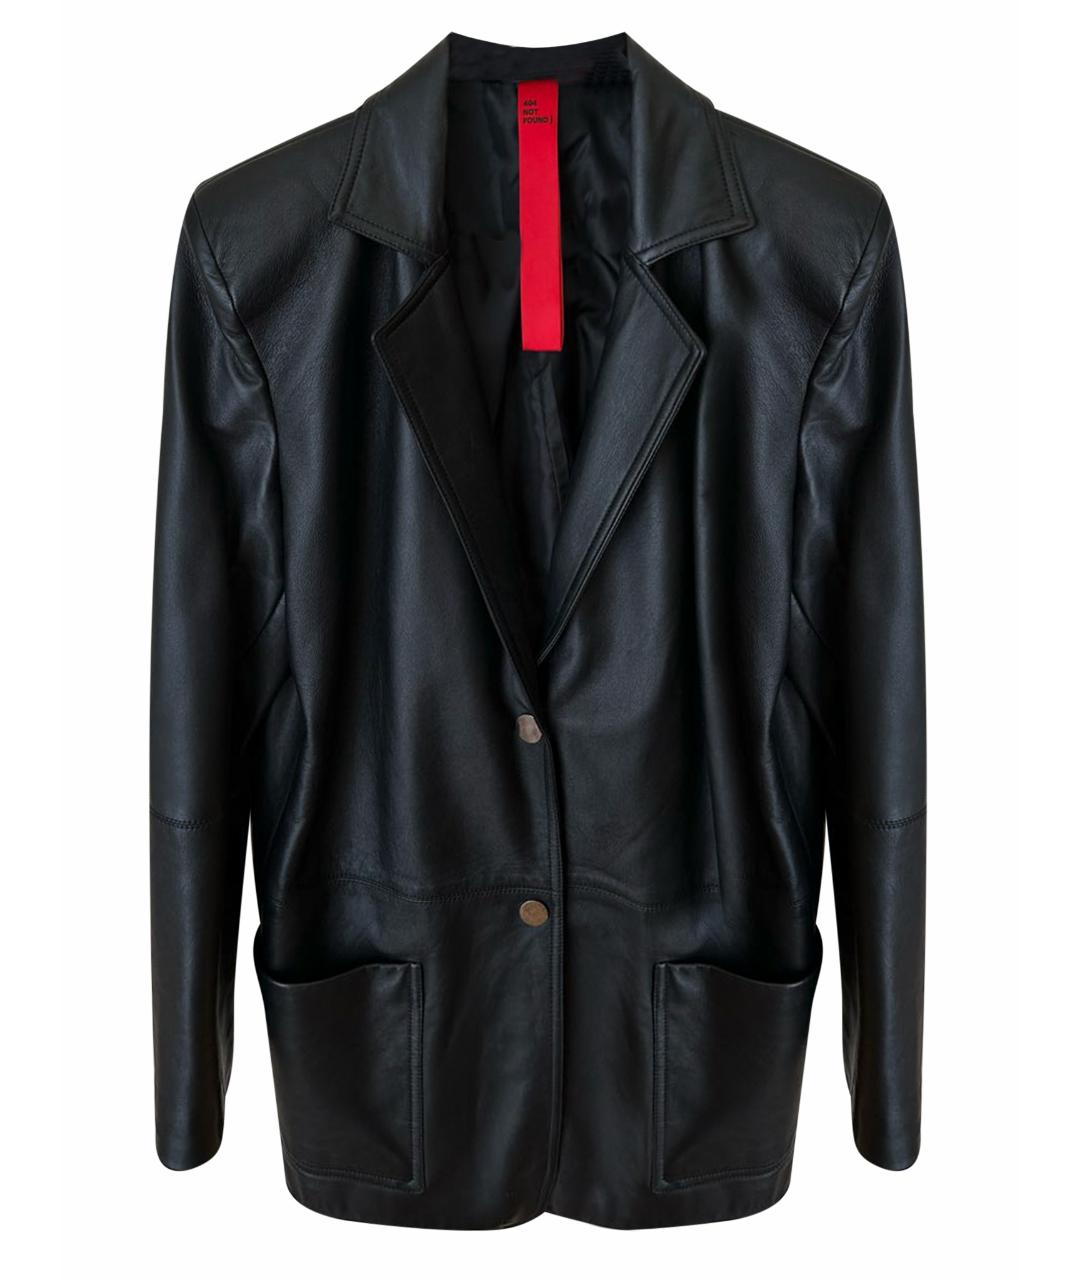 404NOTFOUND Черный кожаный жакет/пиджак, фото 1